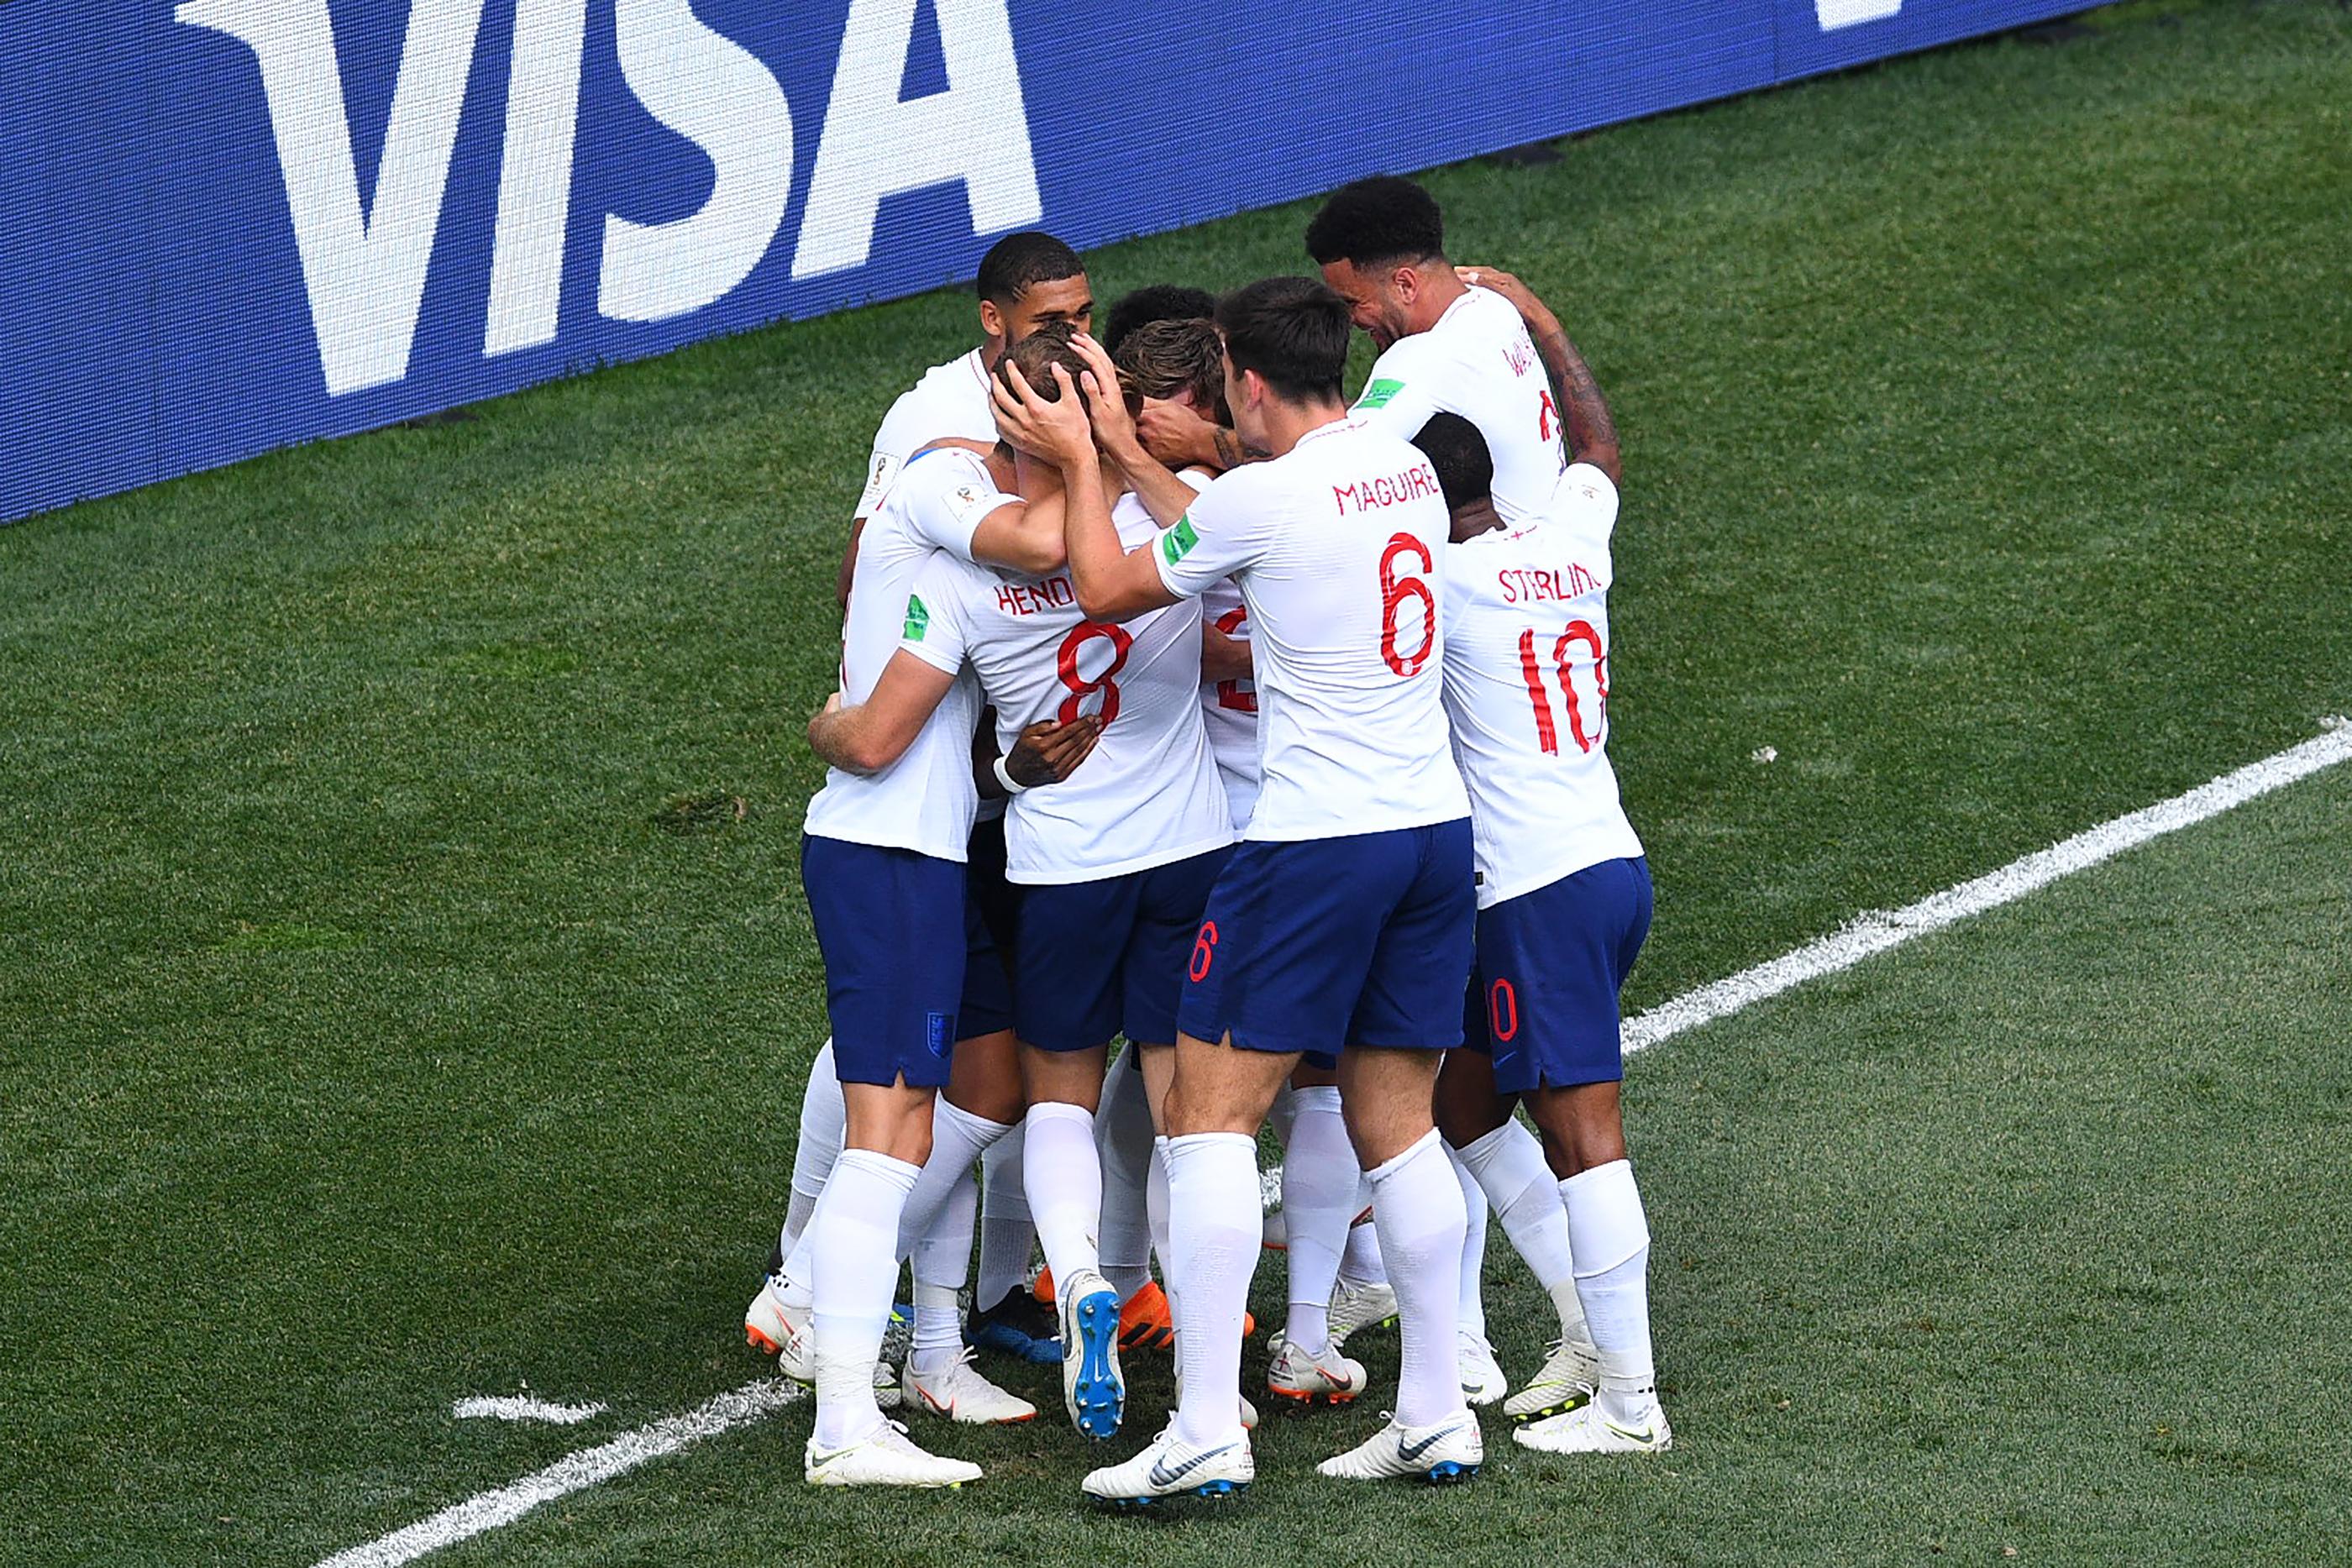 Engleska u osmini finala, Panama postigla prvi gol na Mundijalu